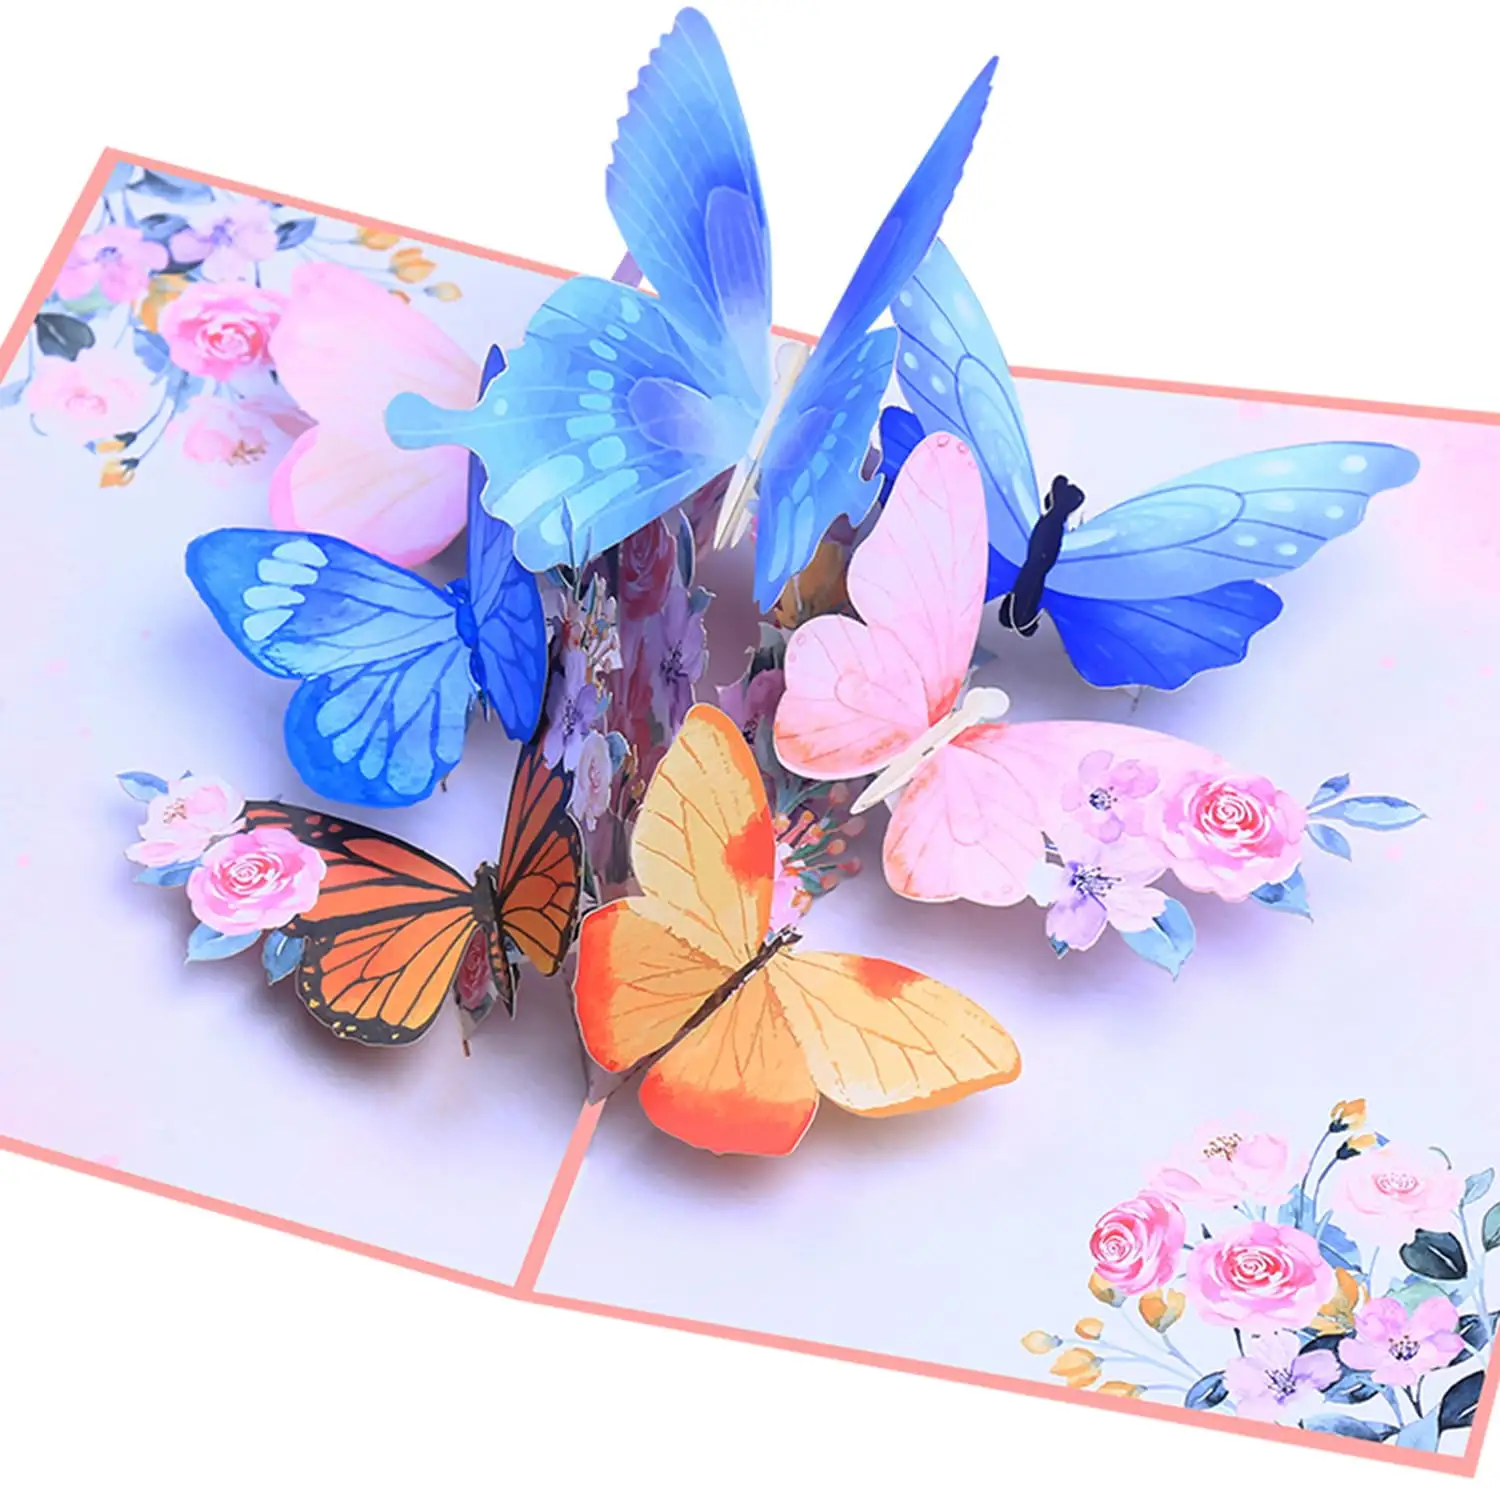 Cartão pop-up de flores e borboletas 3D com envelope para aniversário, Dia das Mães, amigos de aniversário